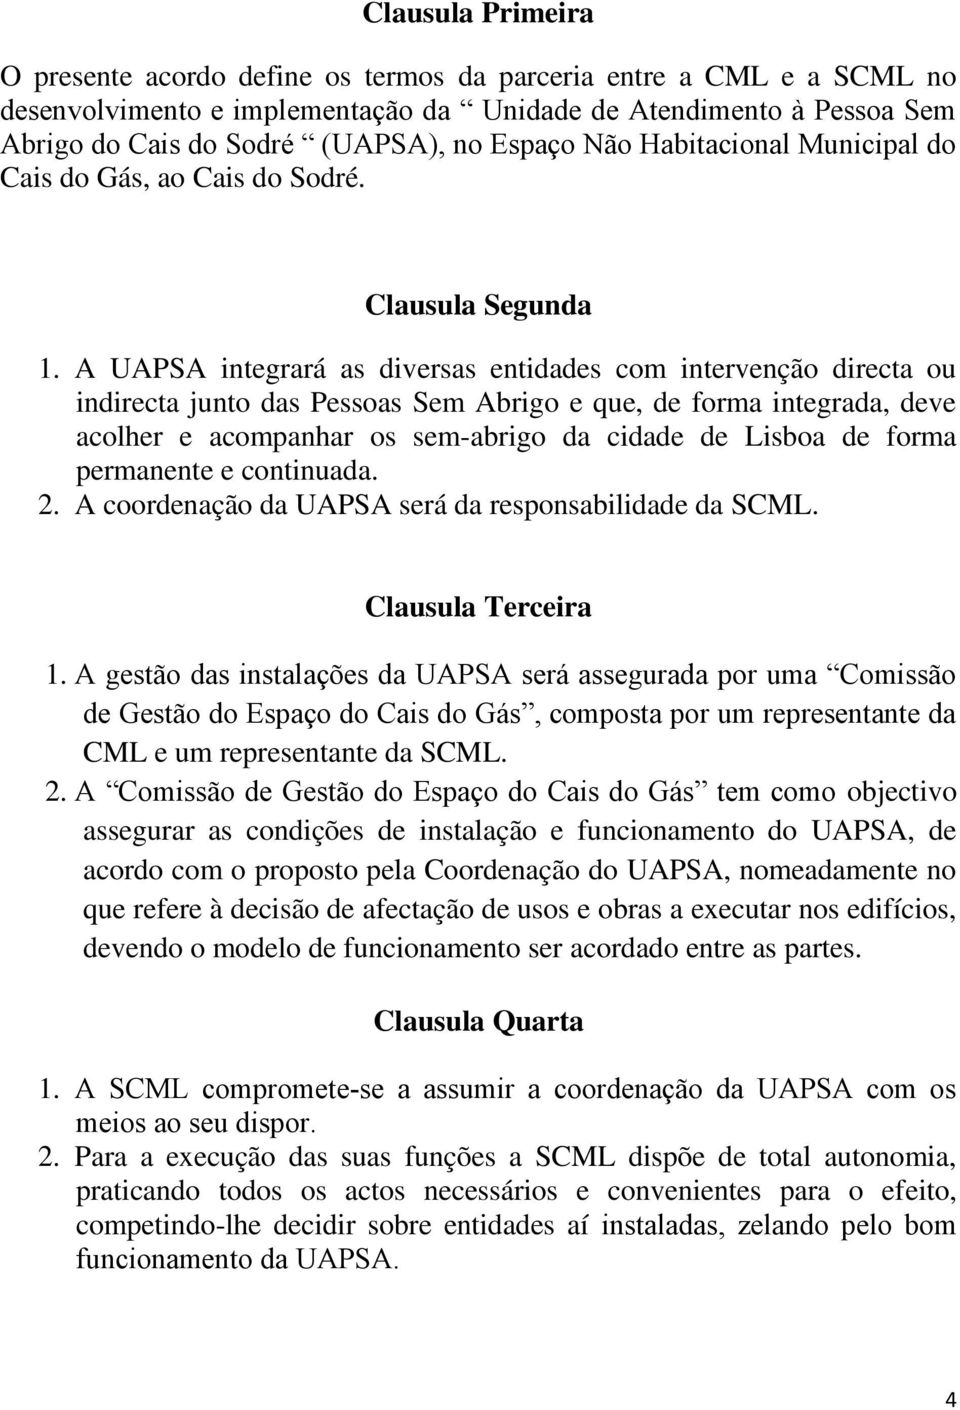 A UAPSA integrará as diversas entidades com intervenção directa ou indirecta junto das Pessoas Sem Abrigo e que, de forma integrada, deve acolher e acompanhar os sem-abrigo da cidade de Lisboa de